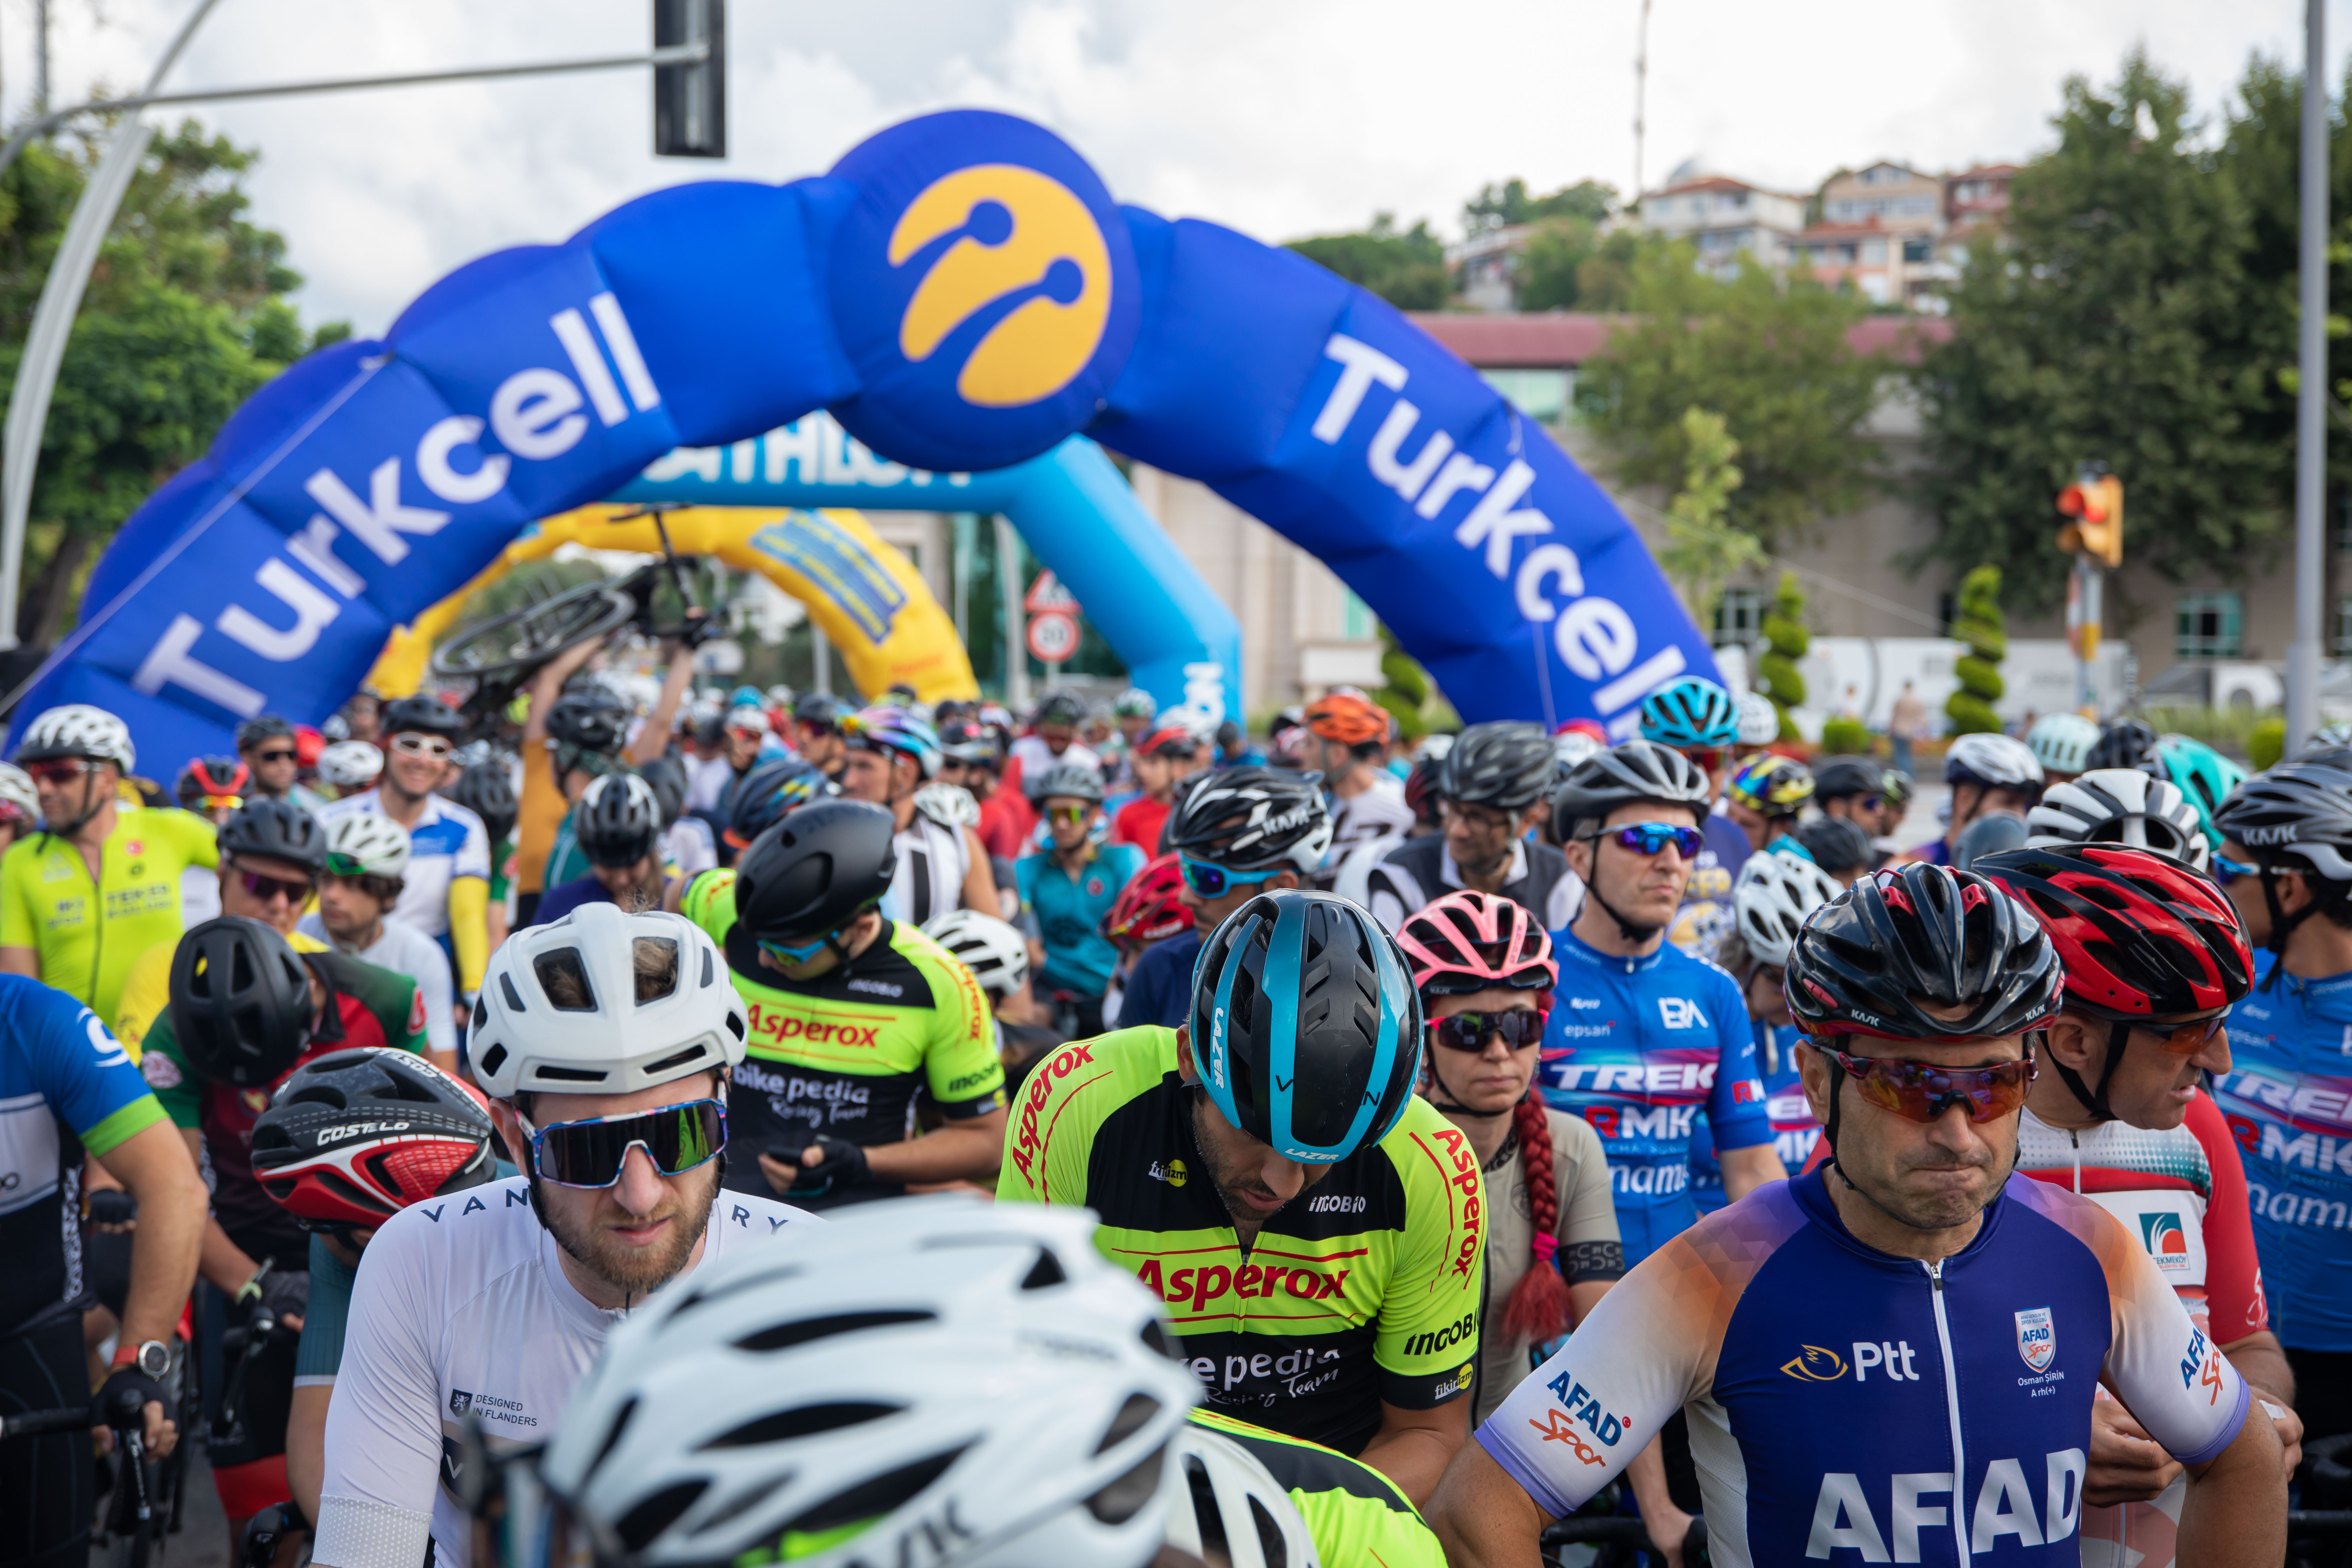 Turkcell Granfondo İstanbul Yol Bisiklet Yarışı Tamamlandı